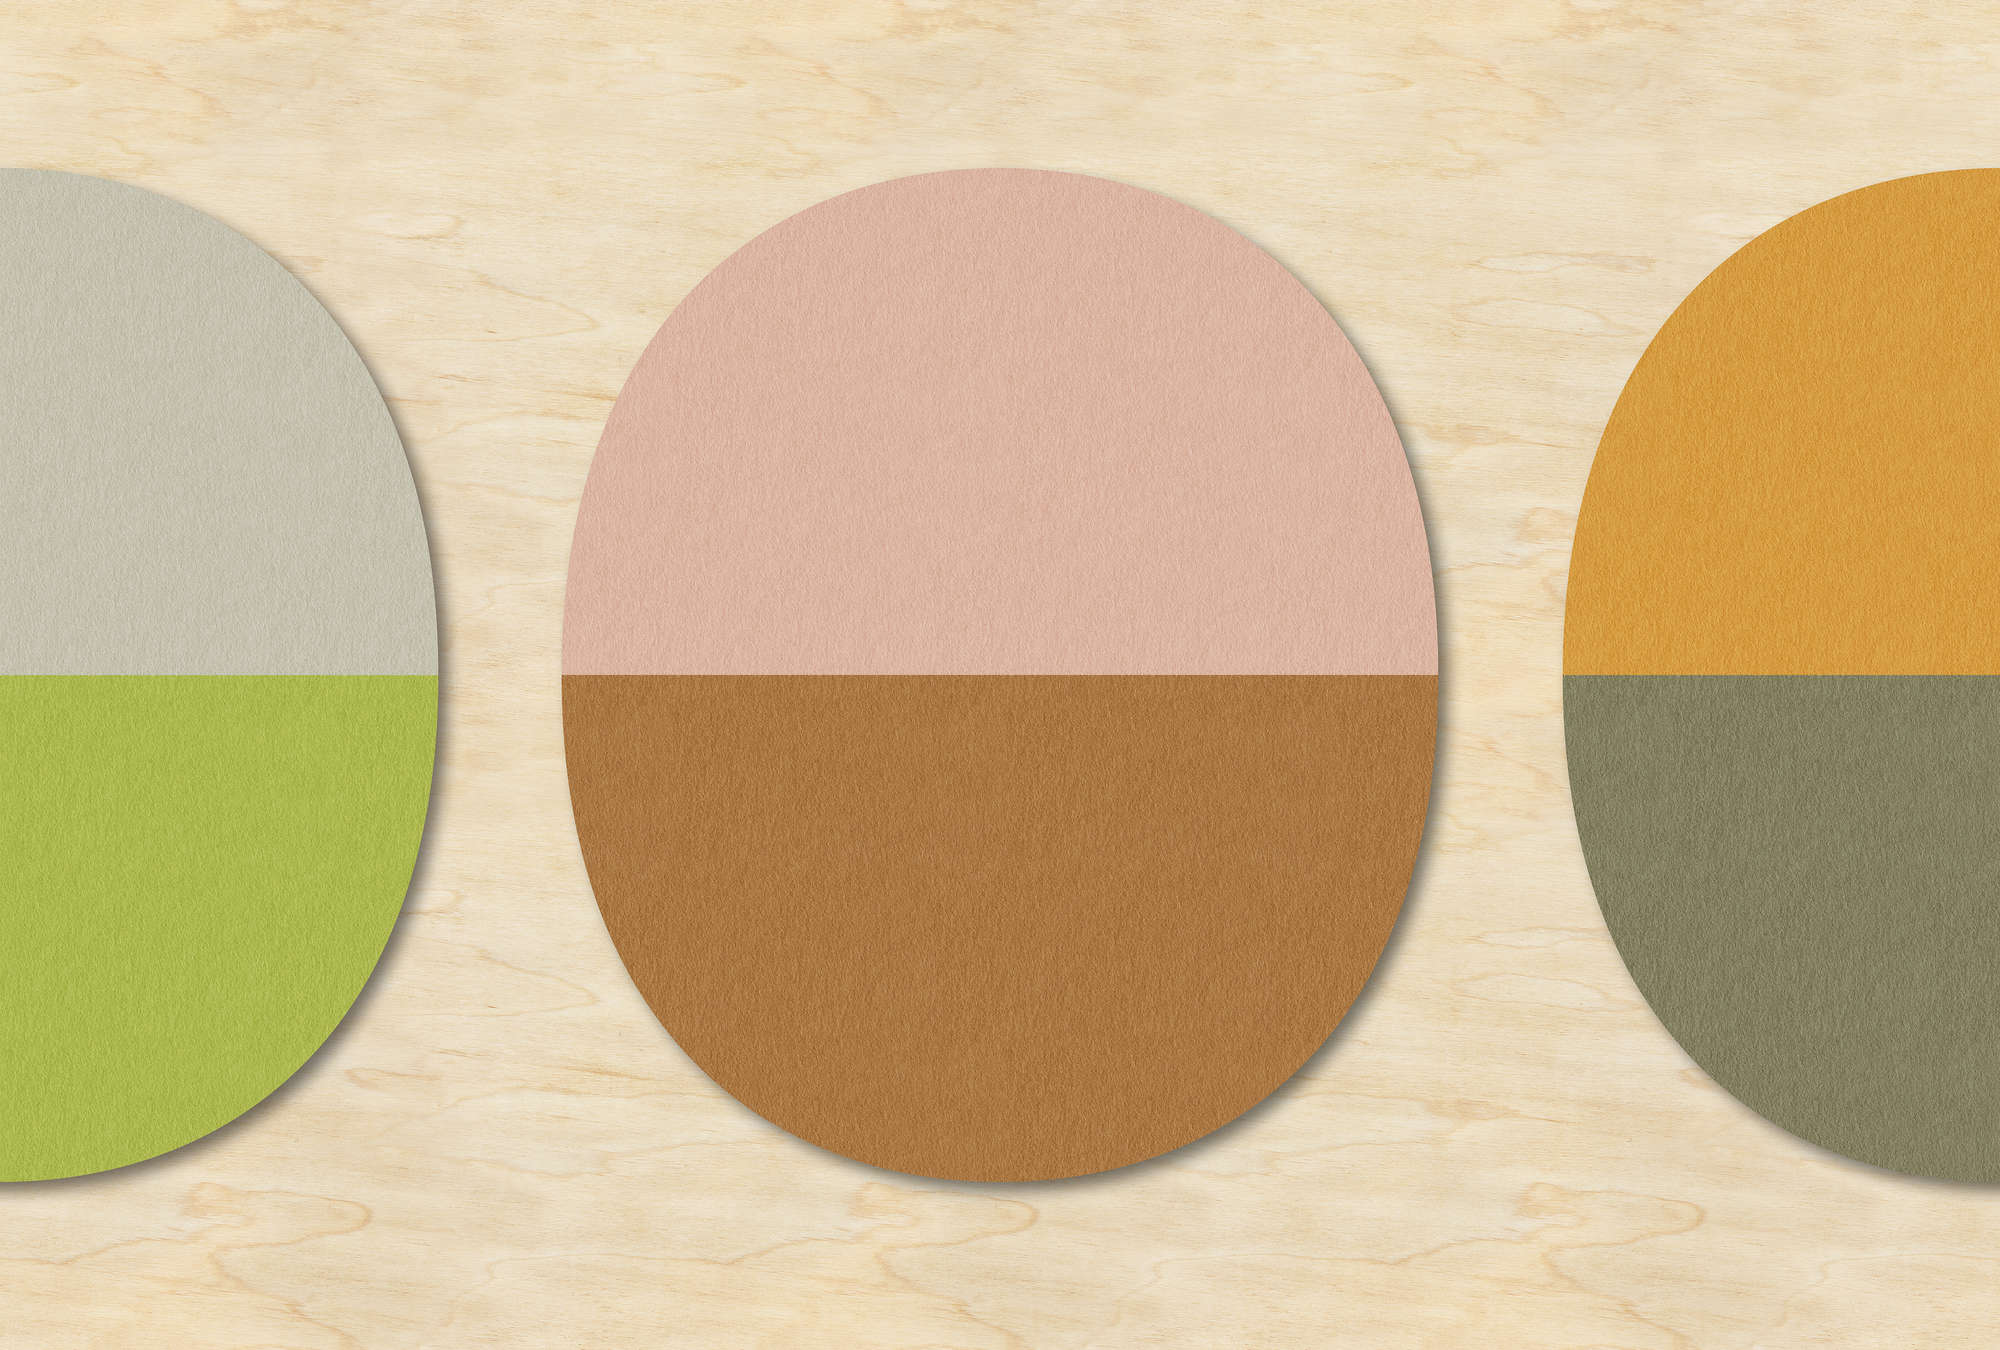             Split ovals 1 - papier peint rétro design coloré en contreplaqué,feutre structure - beige, vert | nacre intissé lisse
        